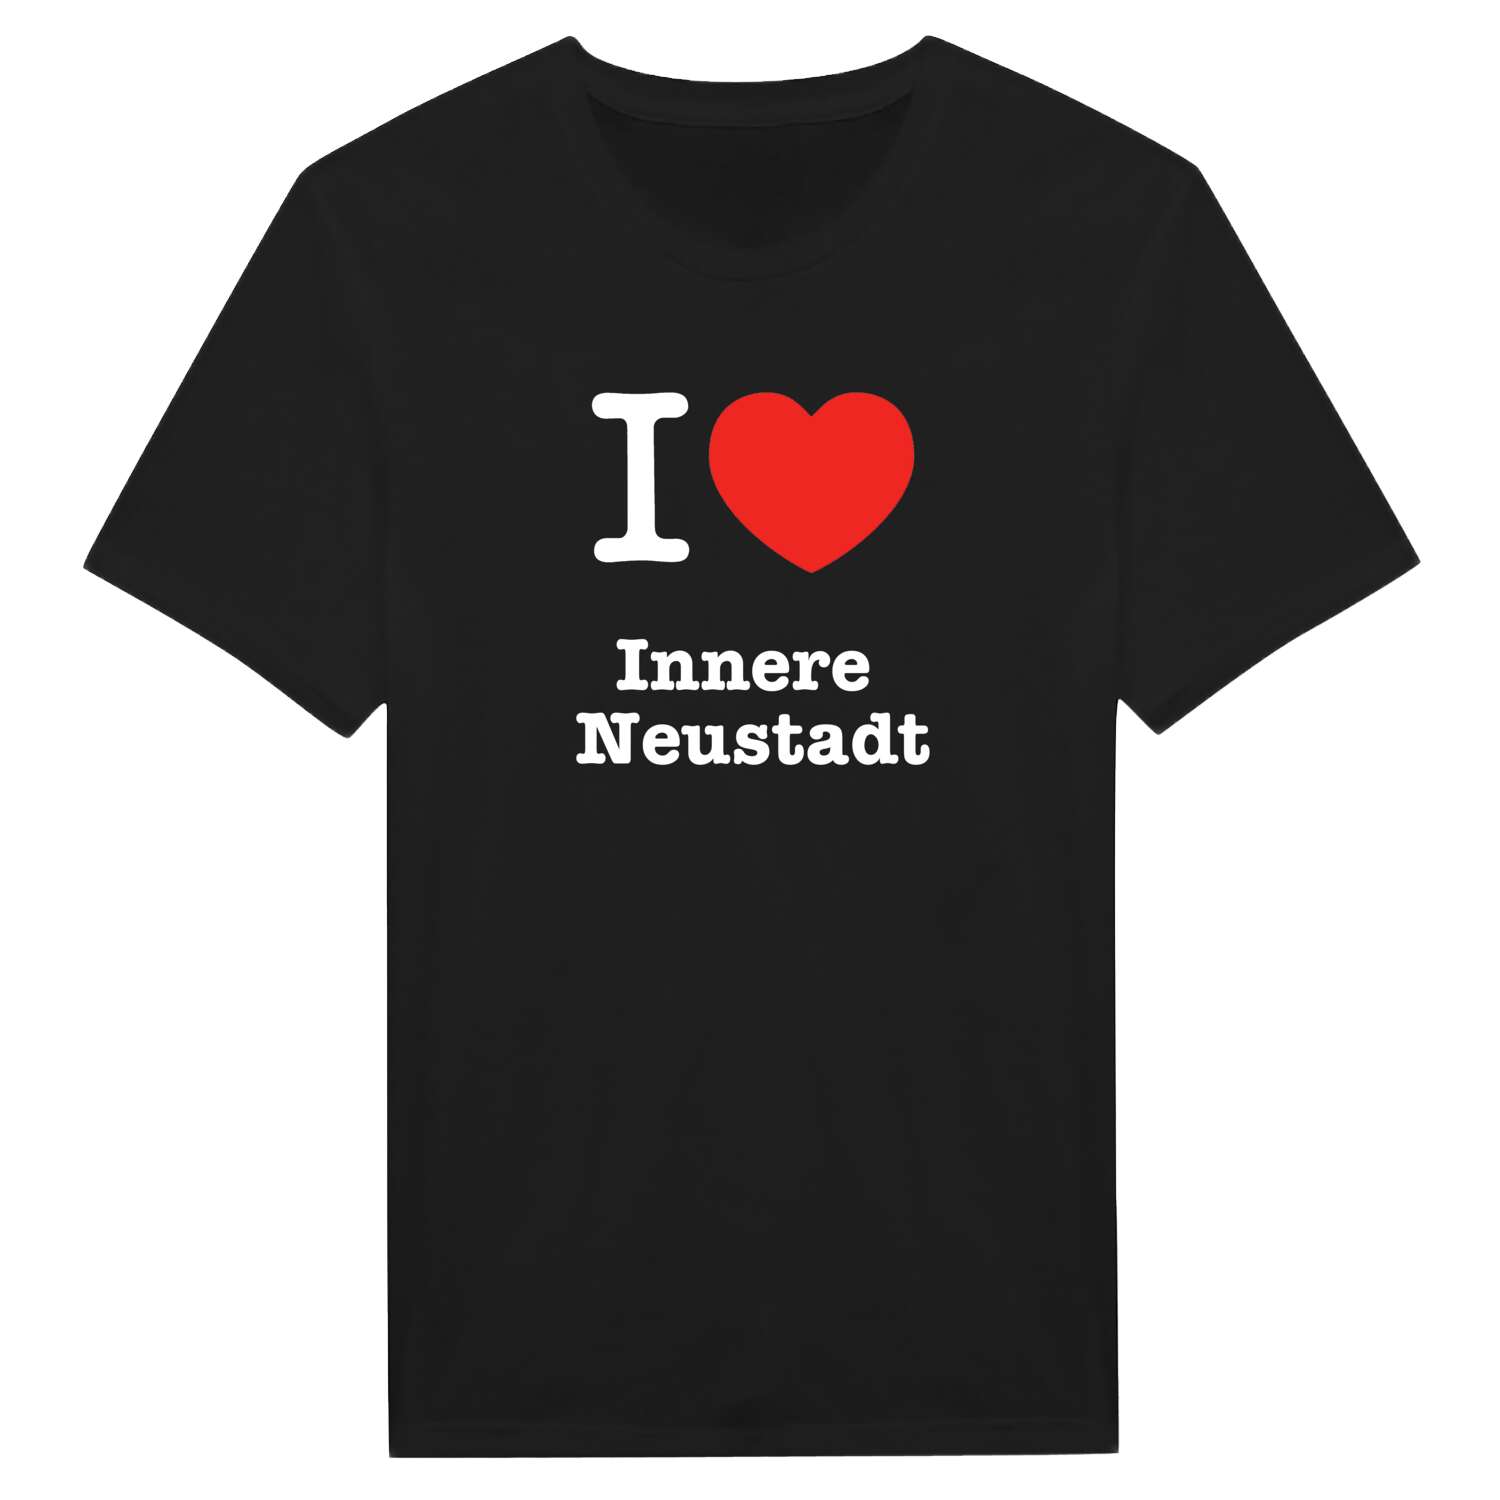 Innere Neustadt T-Shirt »I love«